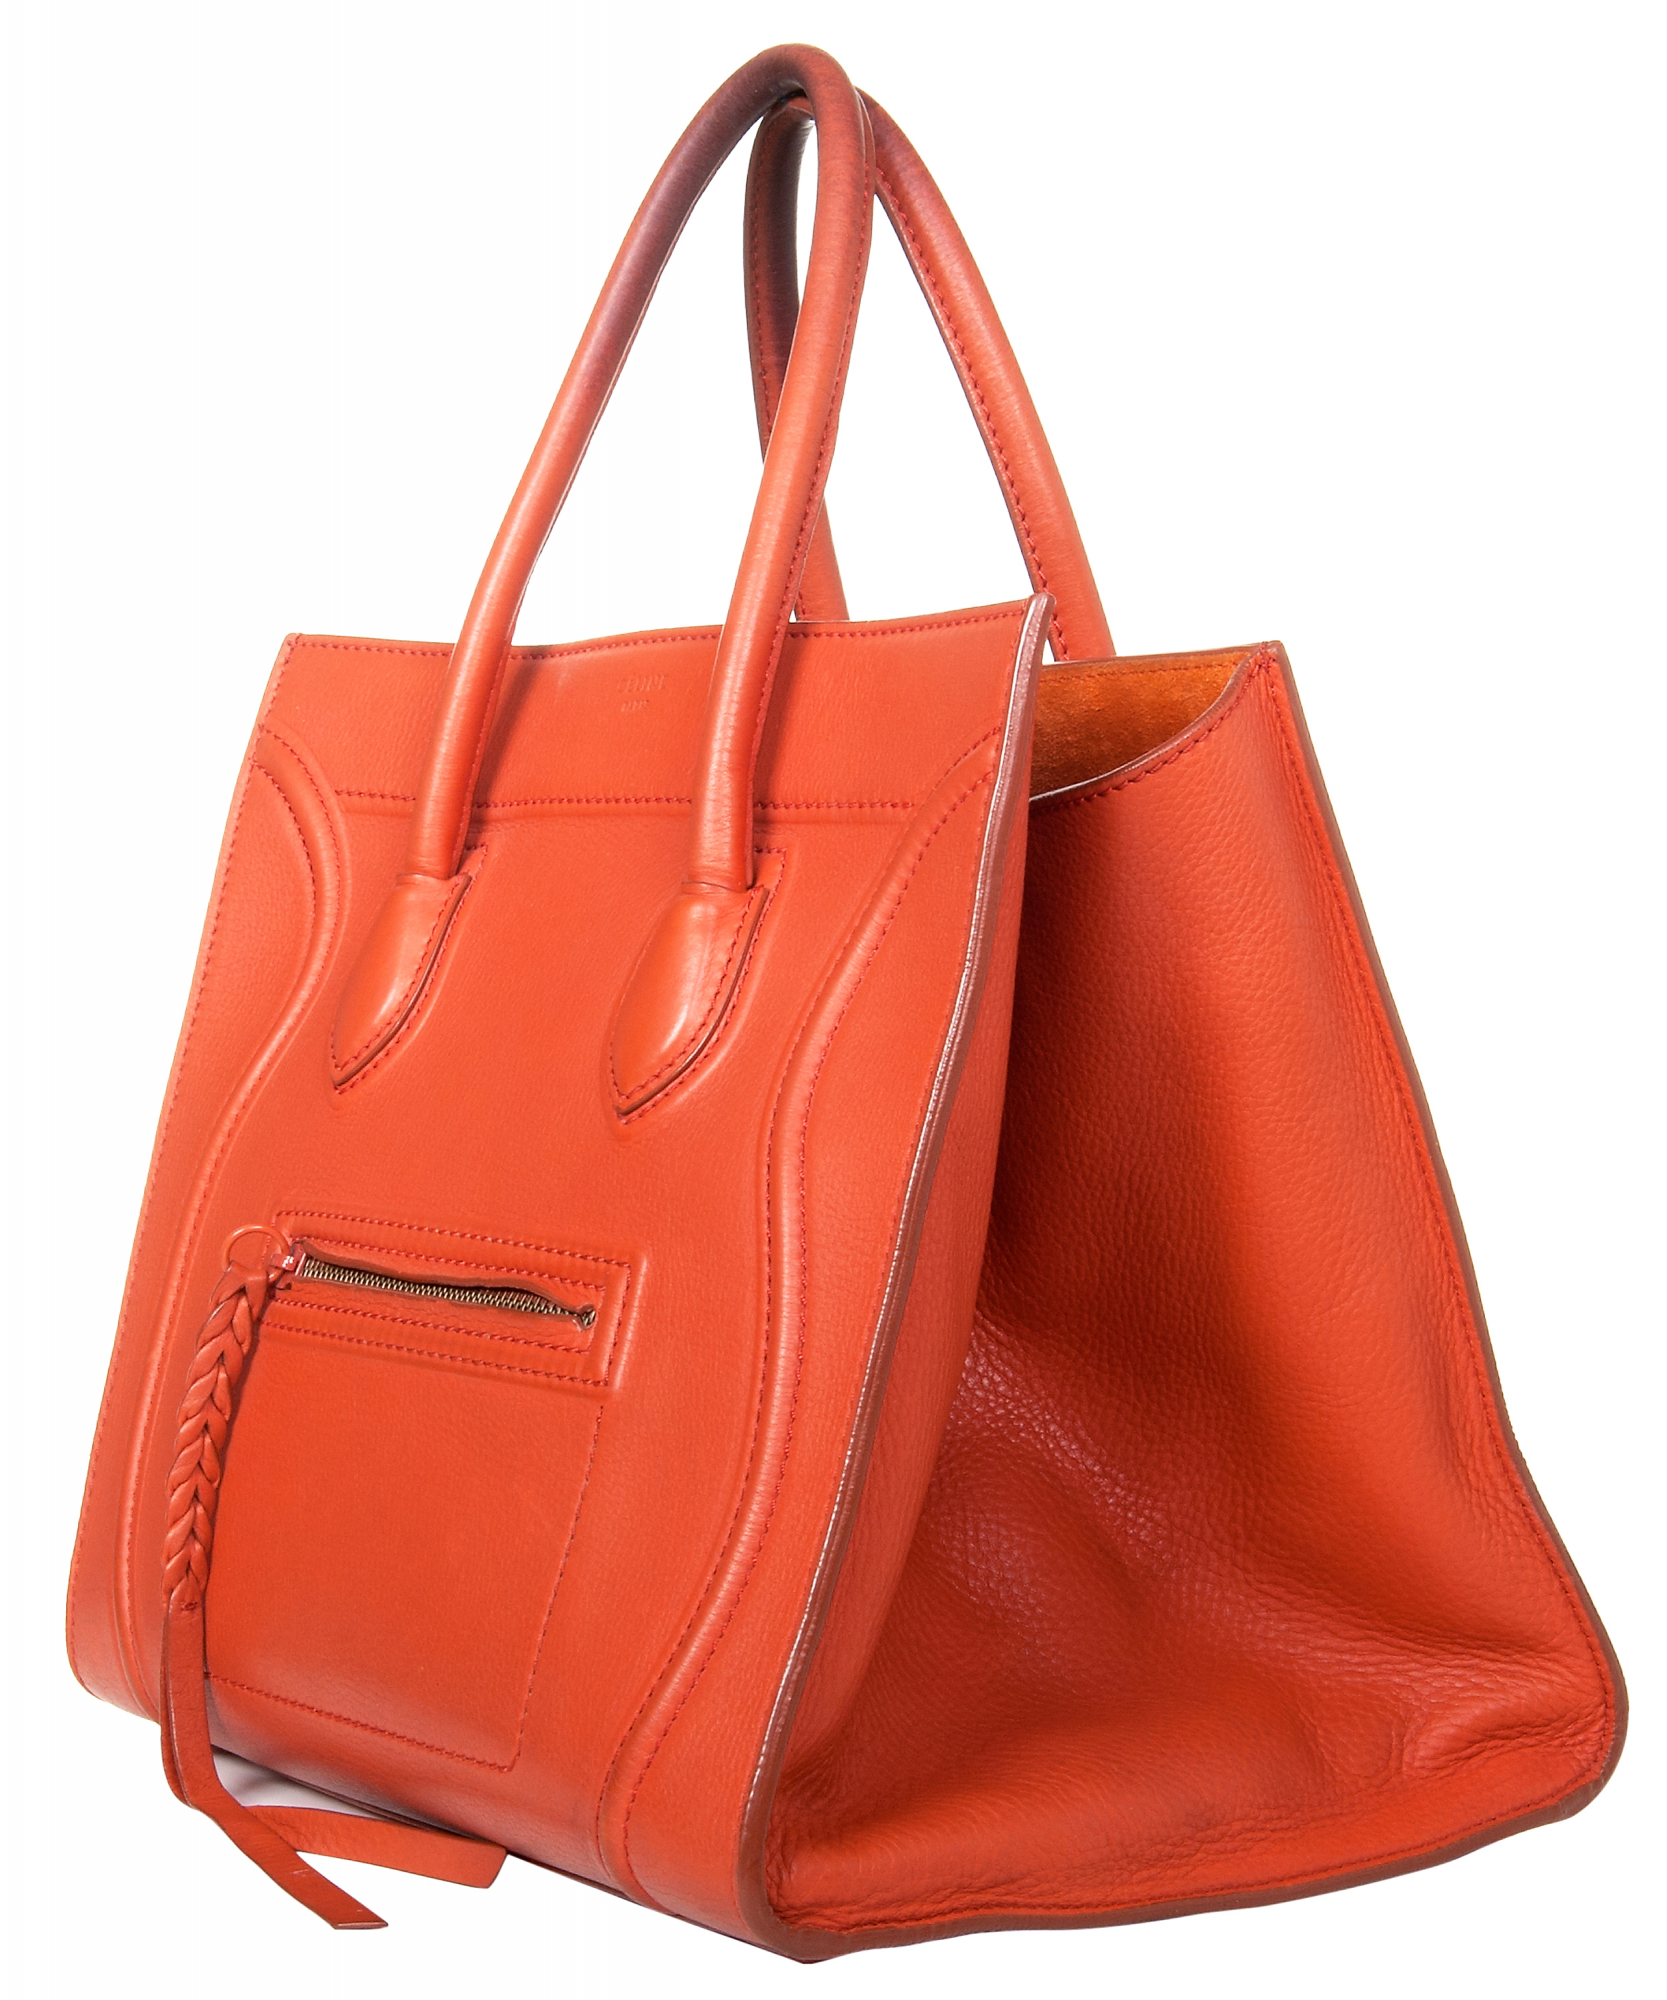 Céline Medium Luggage Phantom Bag in Orange Bullhide Calfskin - Celine ...